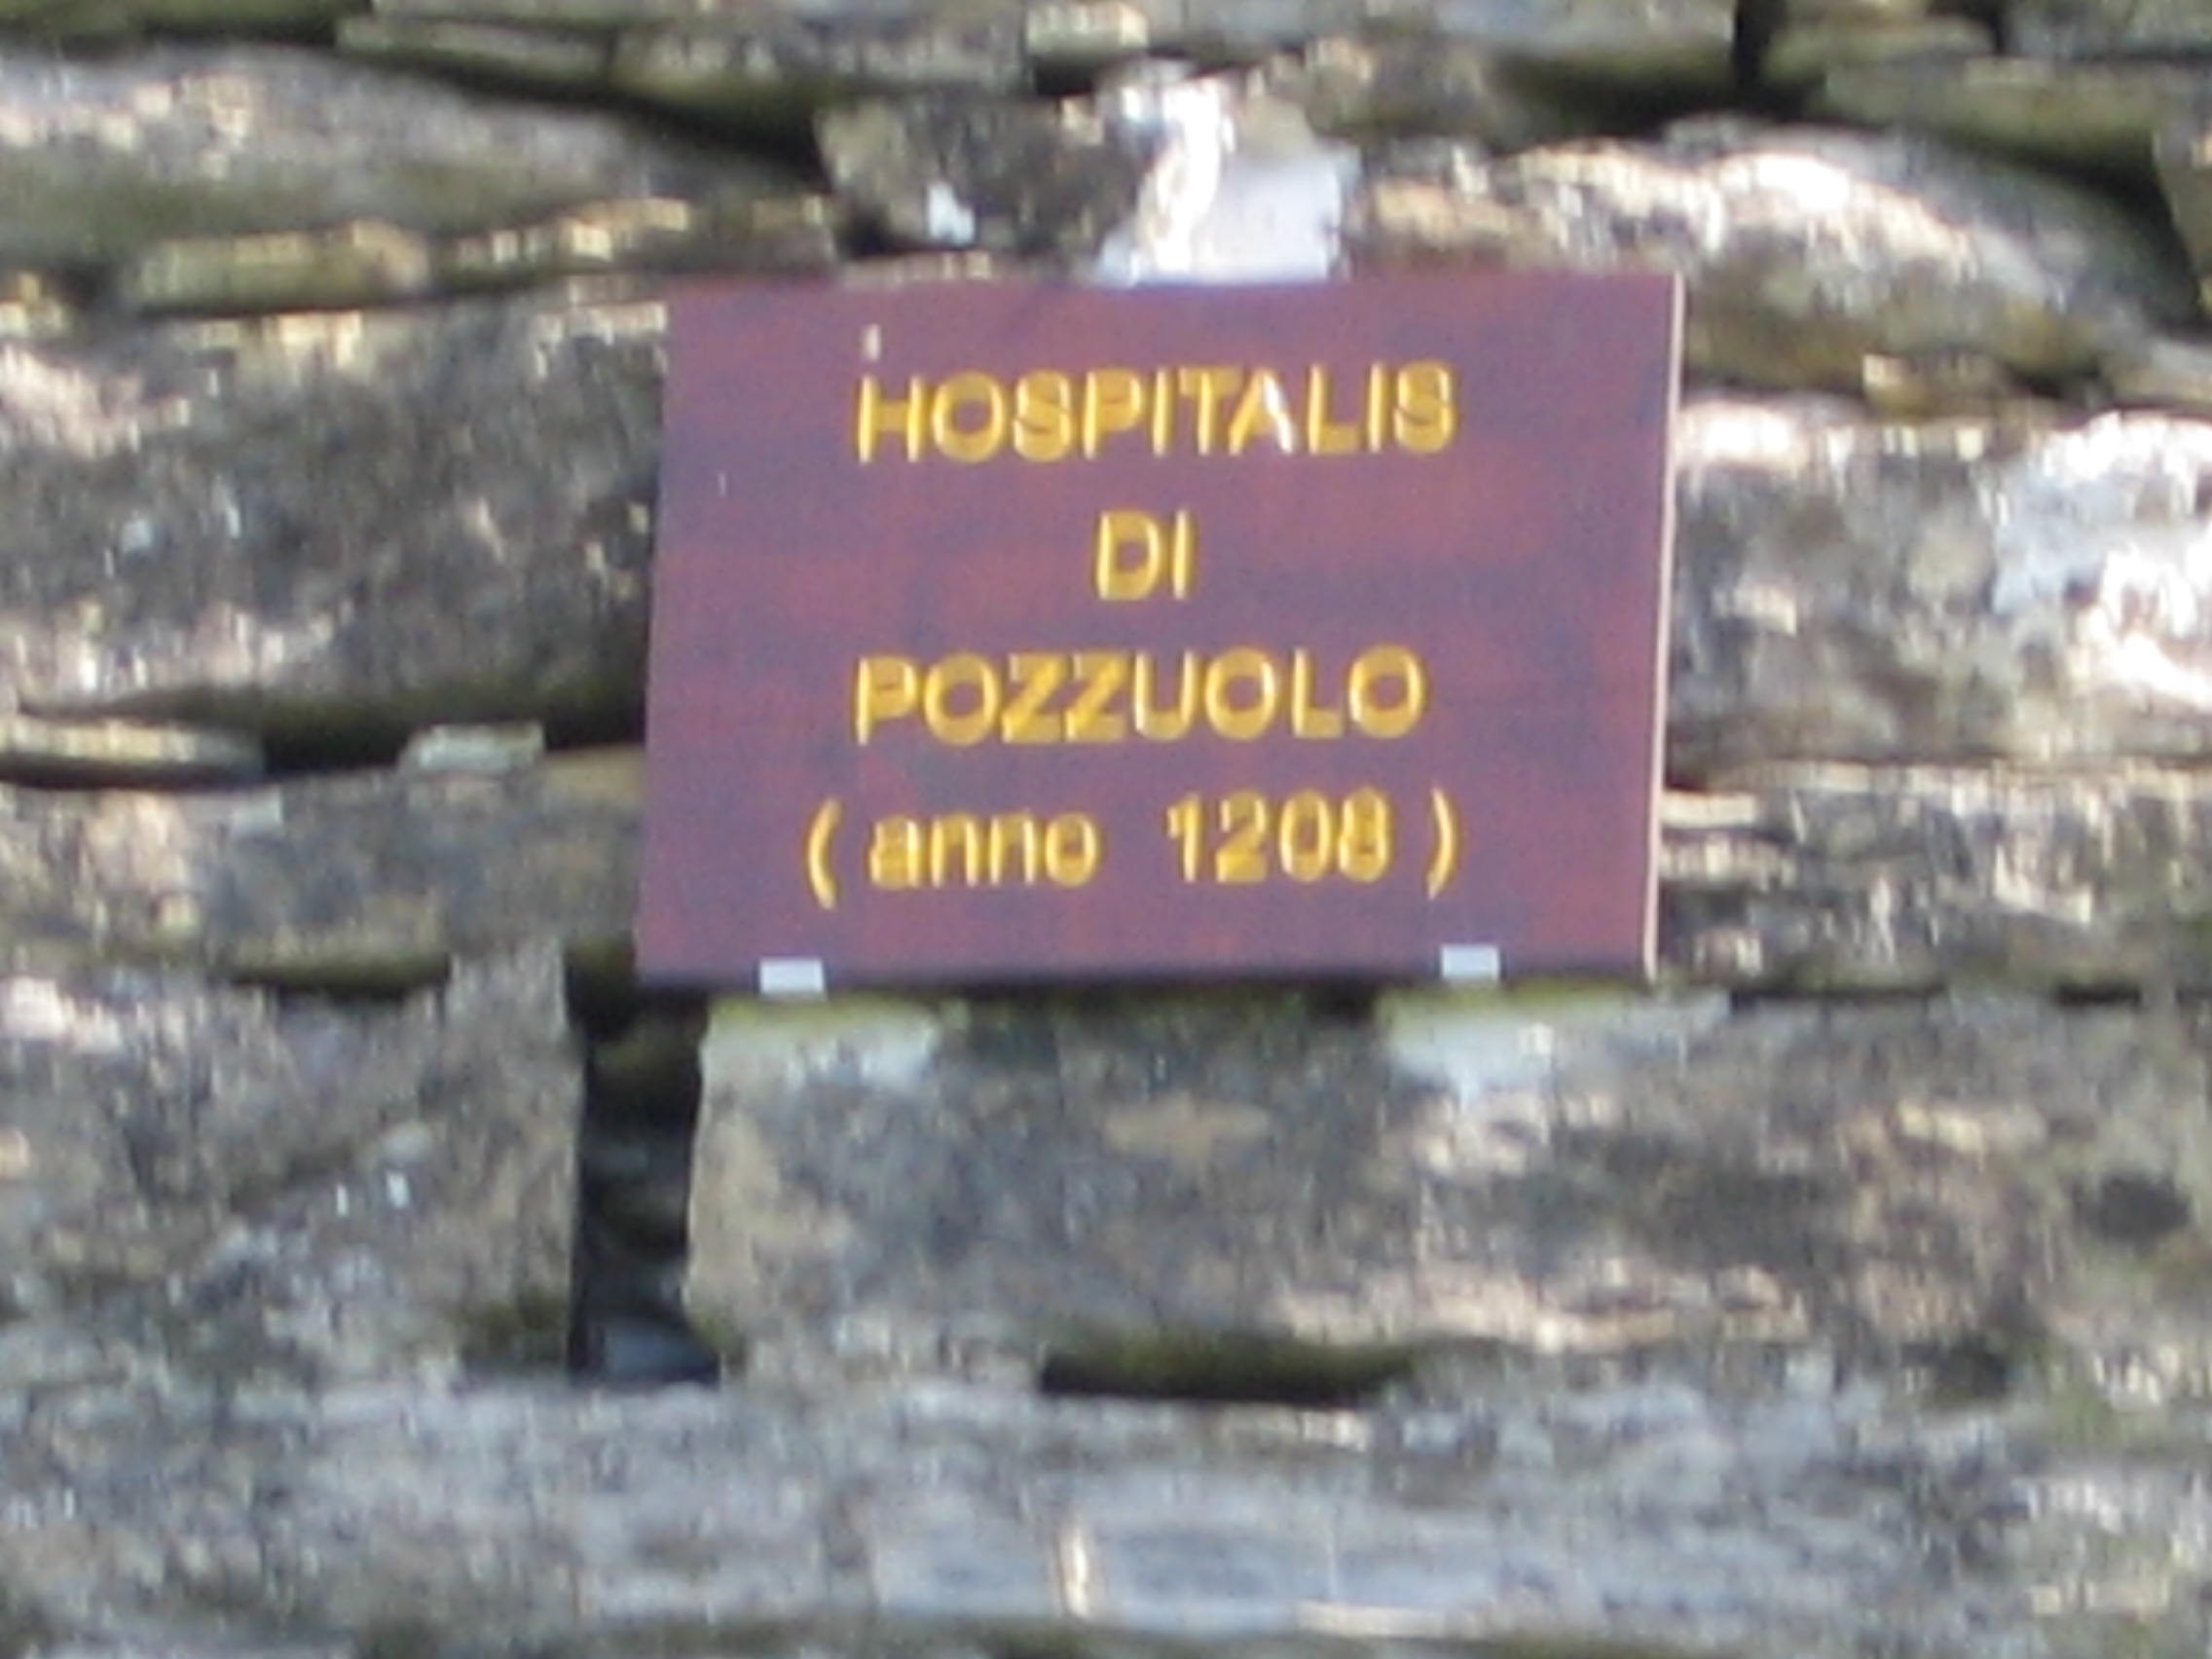 Hospitalis di pozzuolo